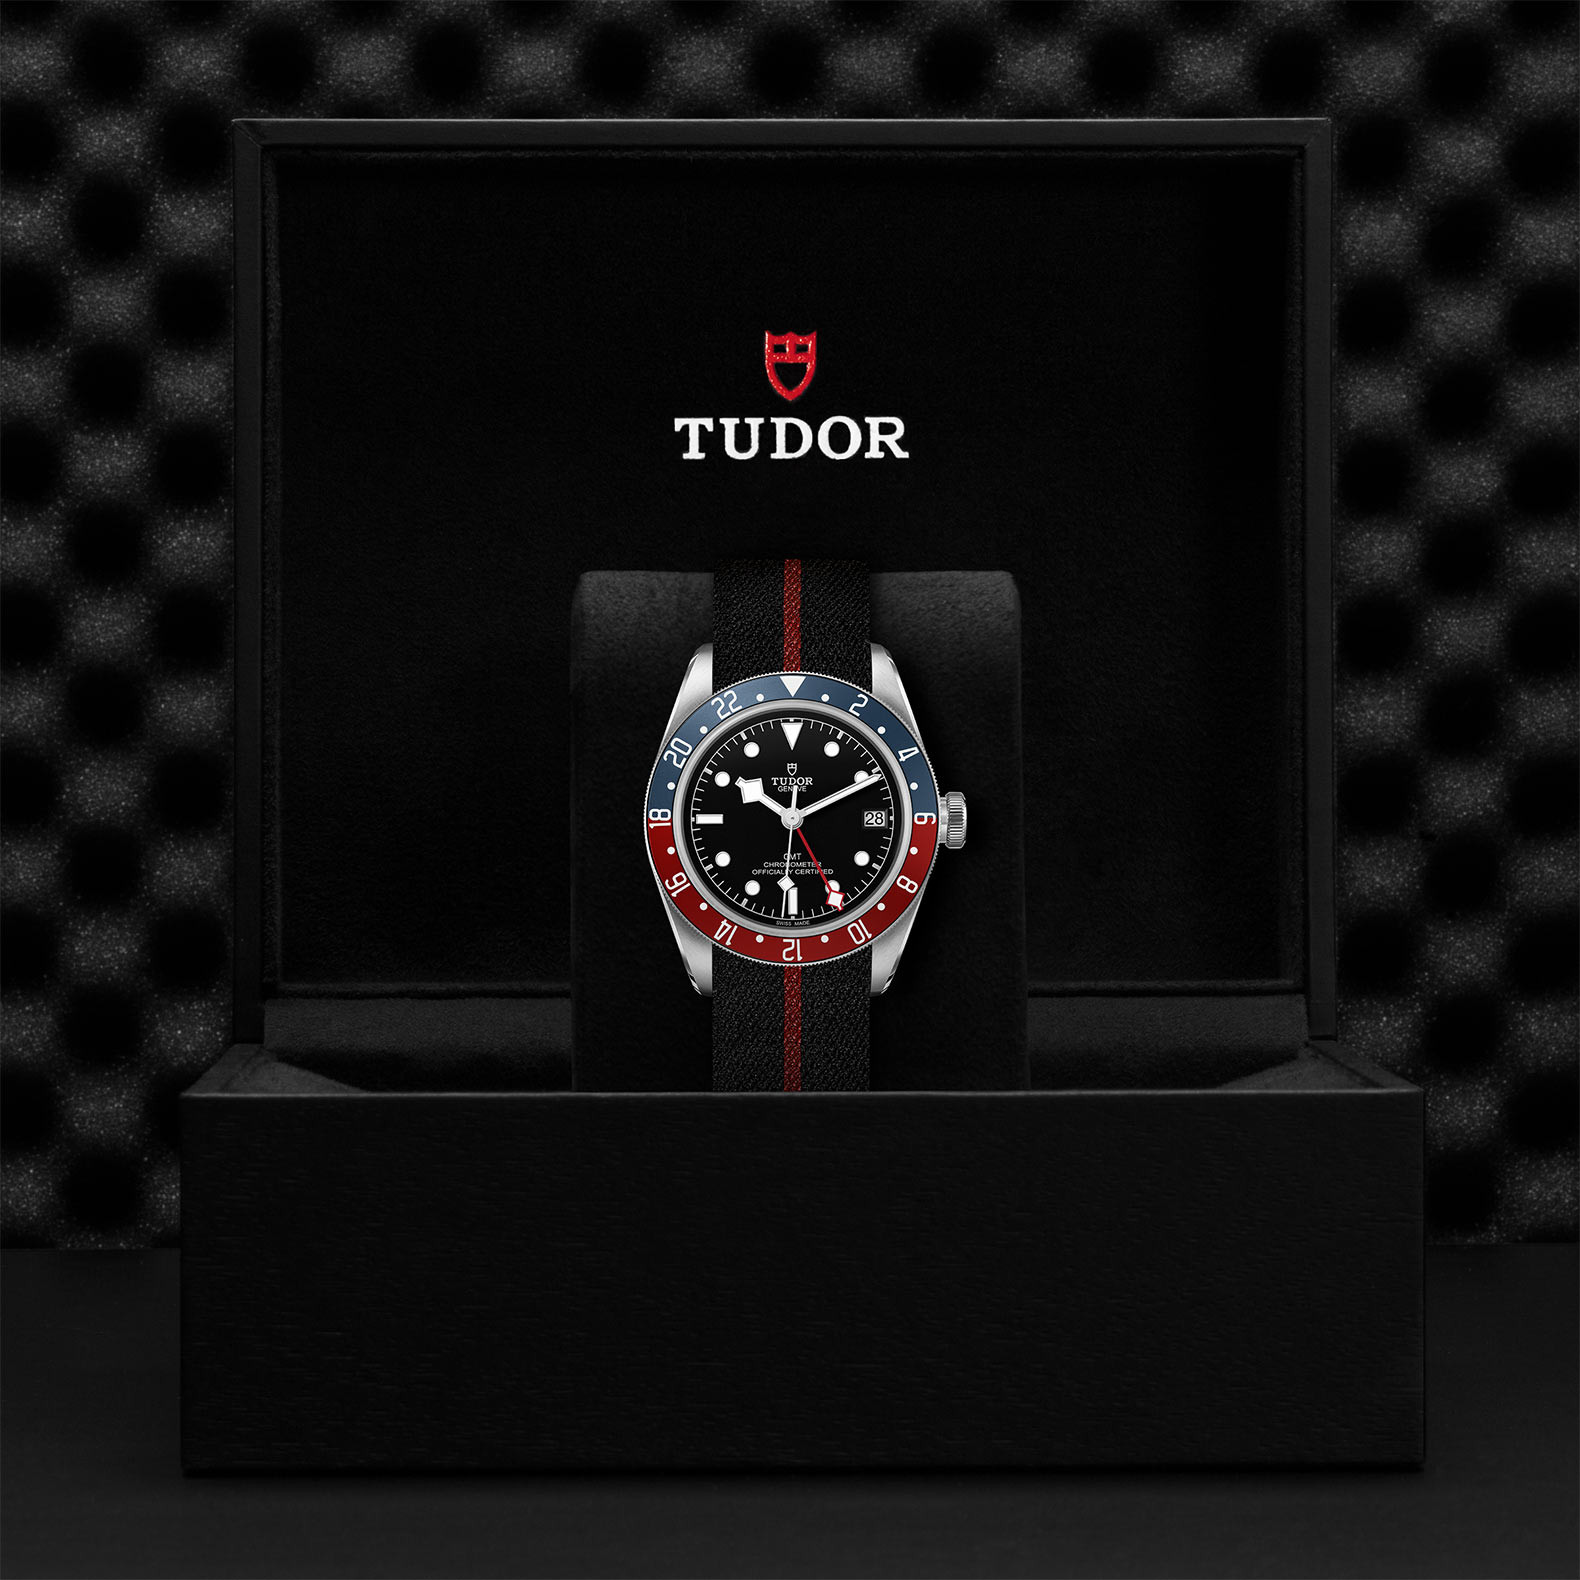 TUDOR Black Bay GMT Watch in Presentation Box